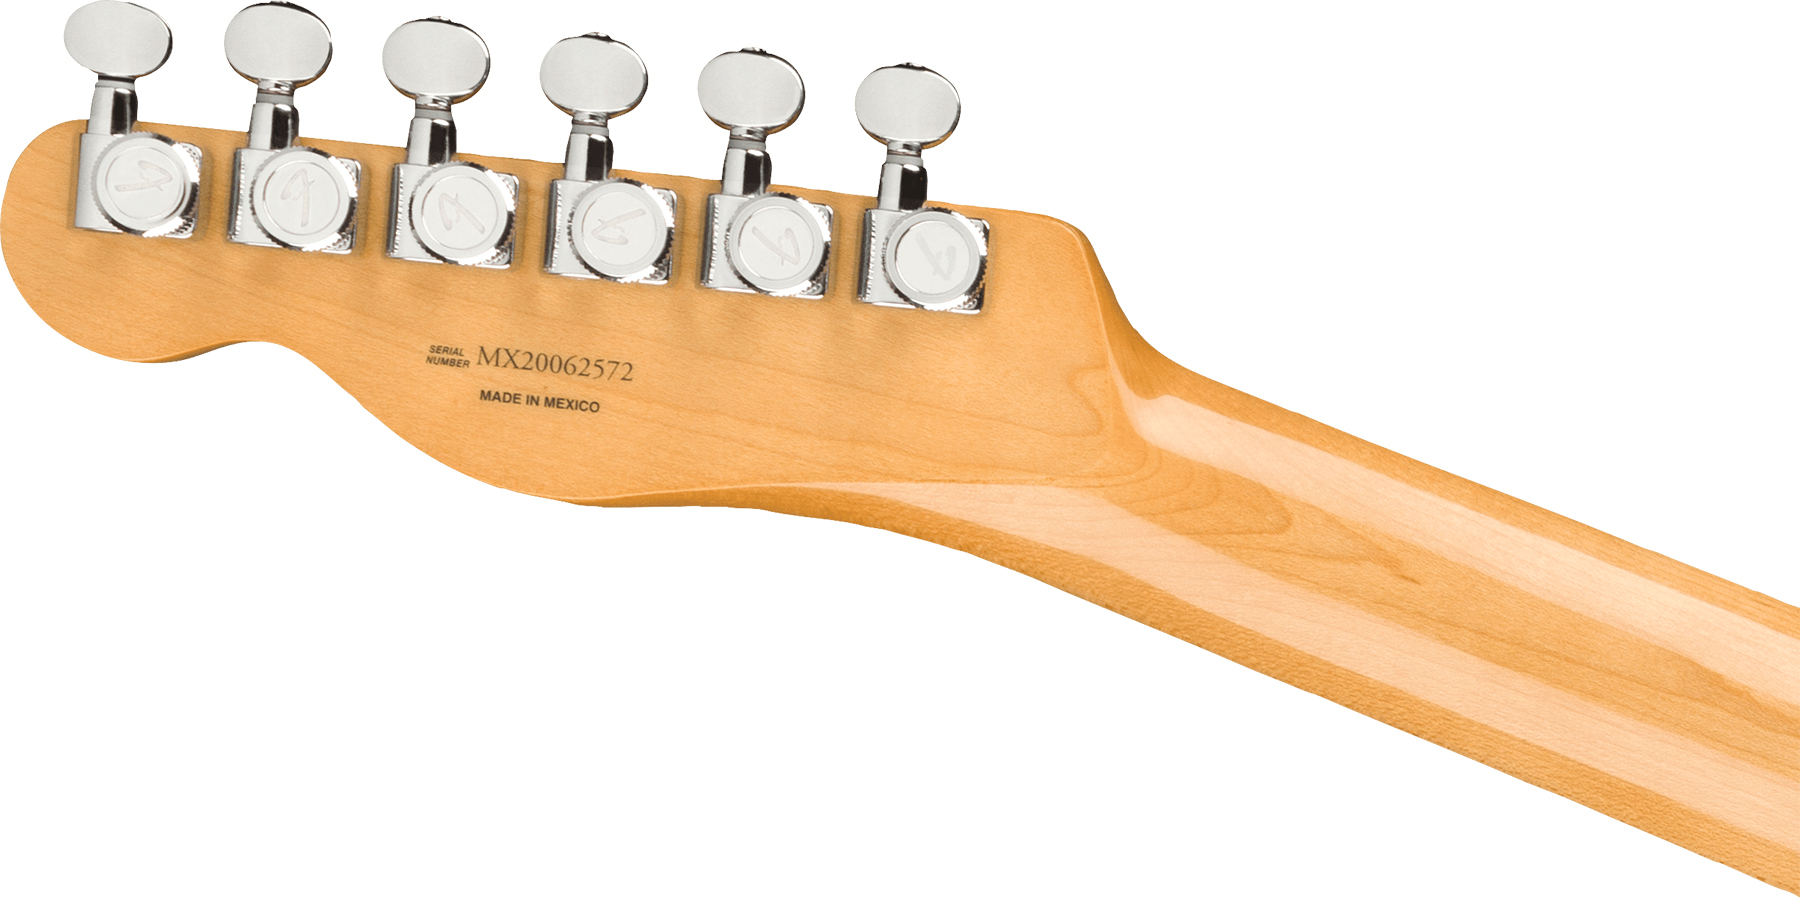 Fender Chrissie Hynde Tele Signature Mex Rw - Road Worn Faded Ice Blue Metallic - Televorm elektrische gitaar - Variation 3